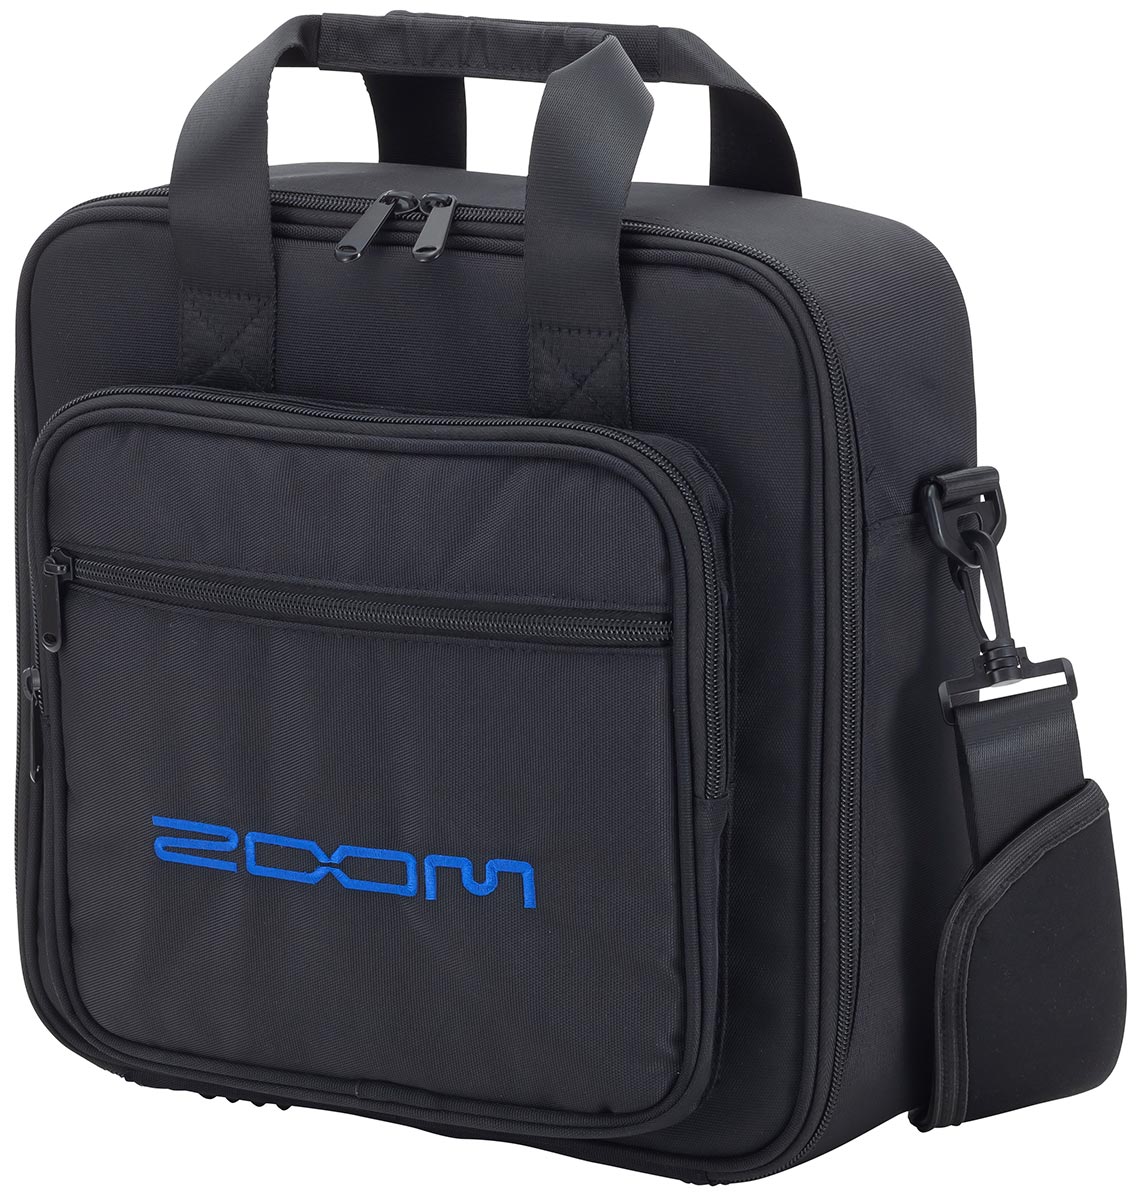 Аксессуары для DJ оборудования Zoom CBL-8 zoom prestige сумка переноска 0 с карманами